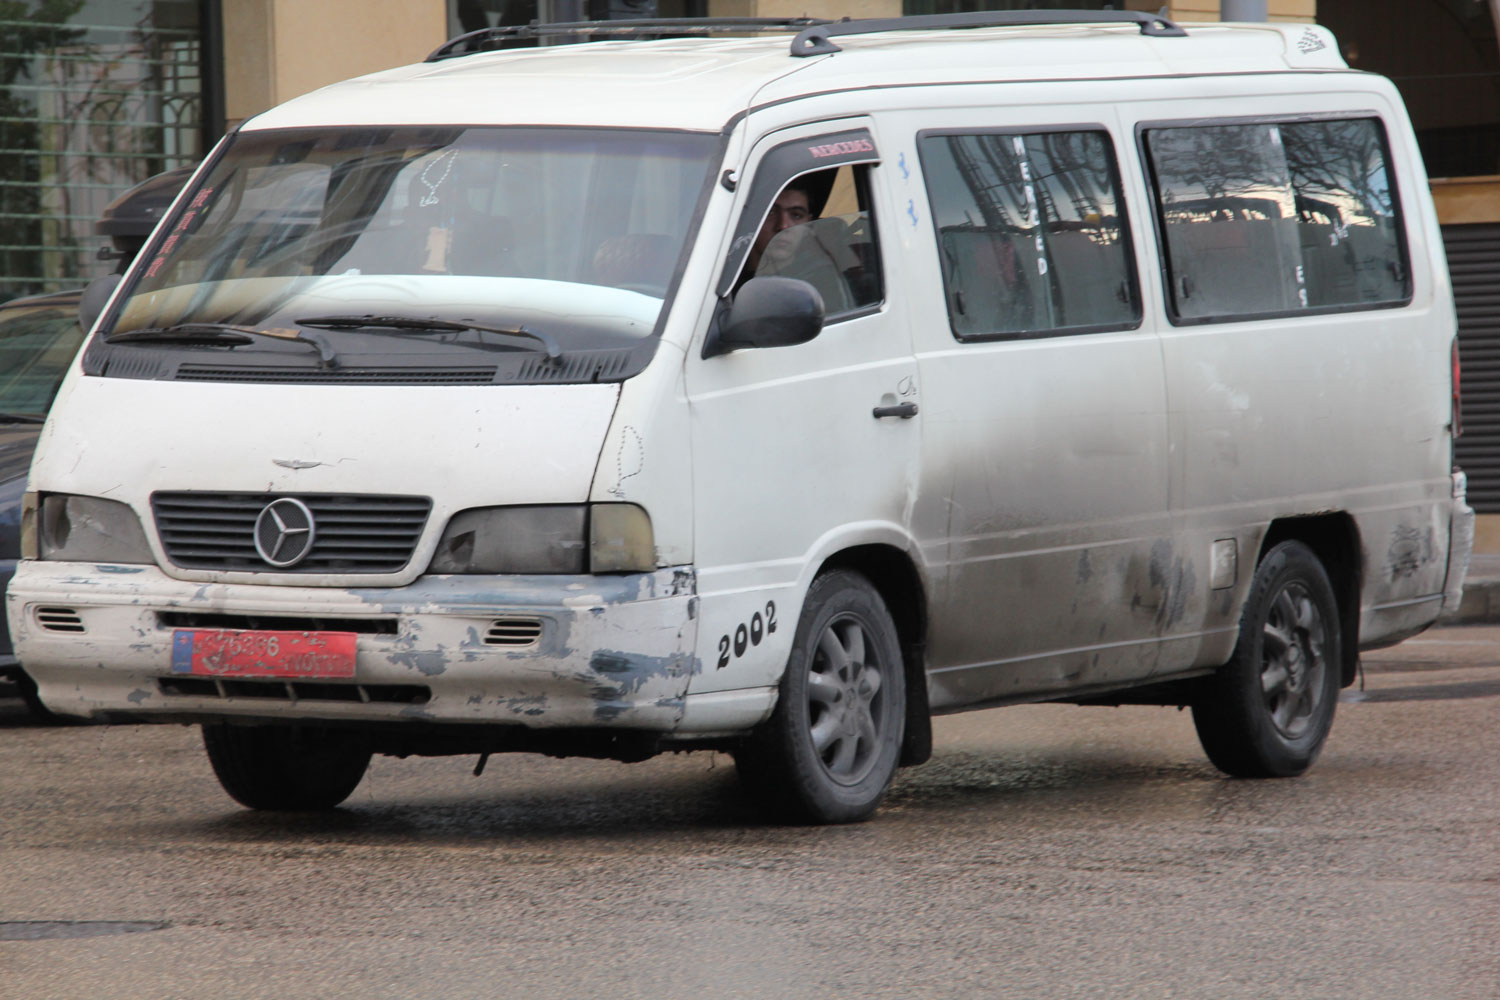 À Beyrouth, la plaque rouge indique que ce véhicule est un taxi.